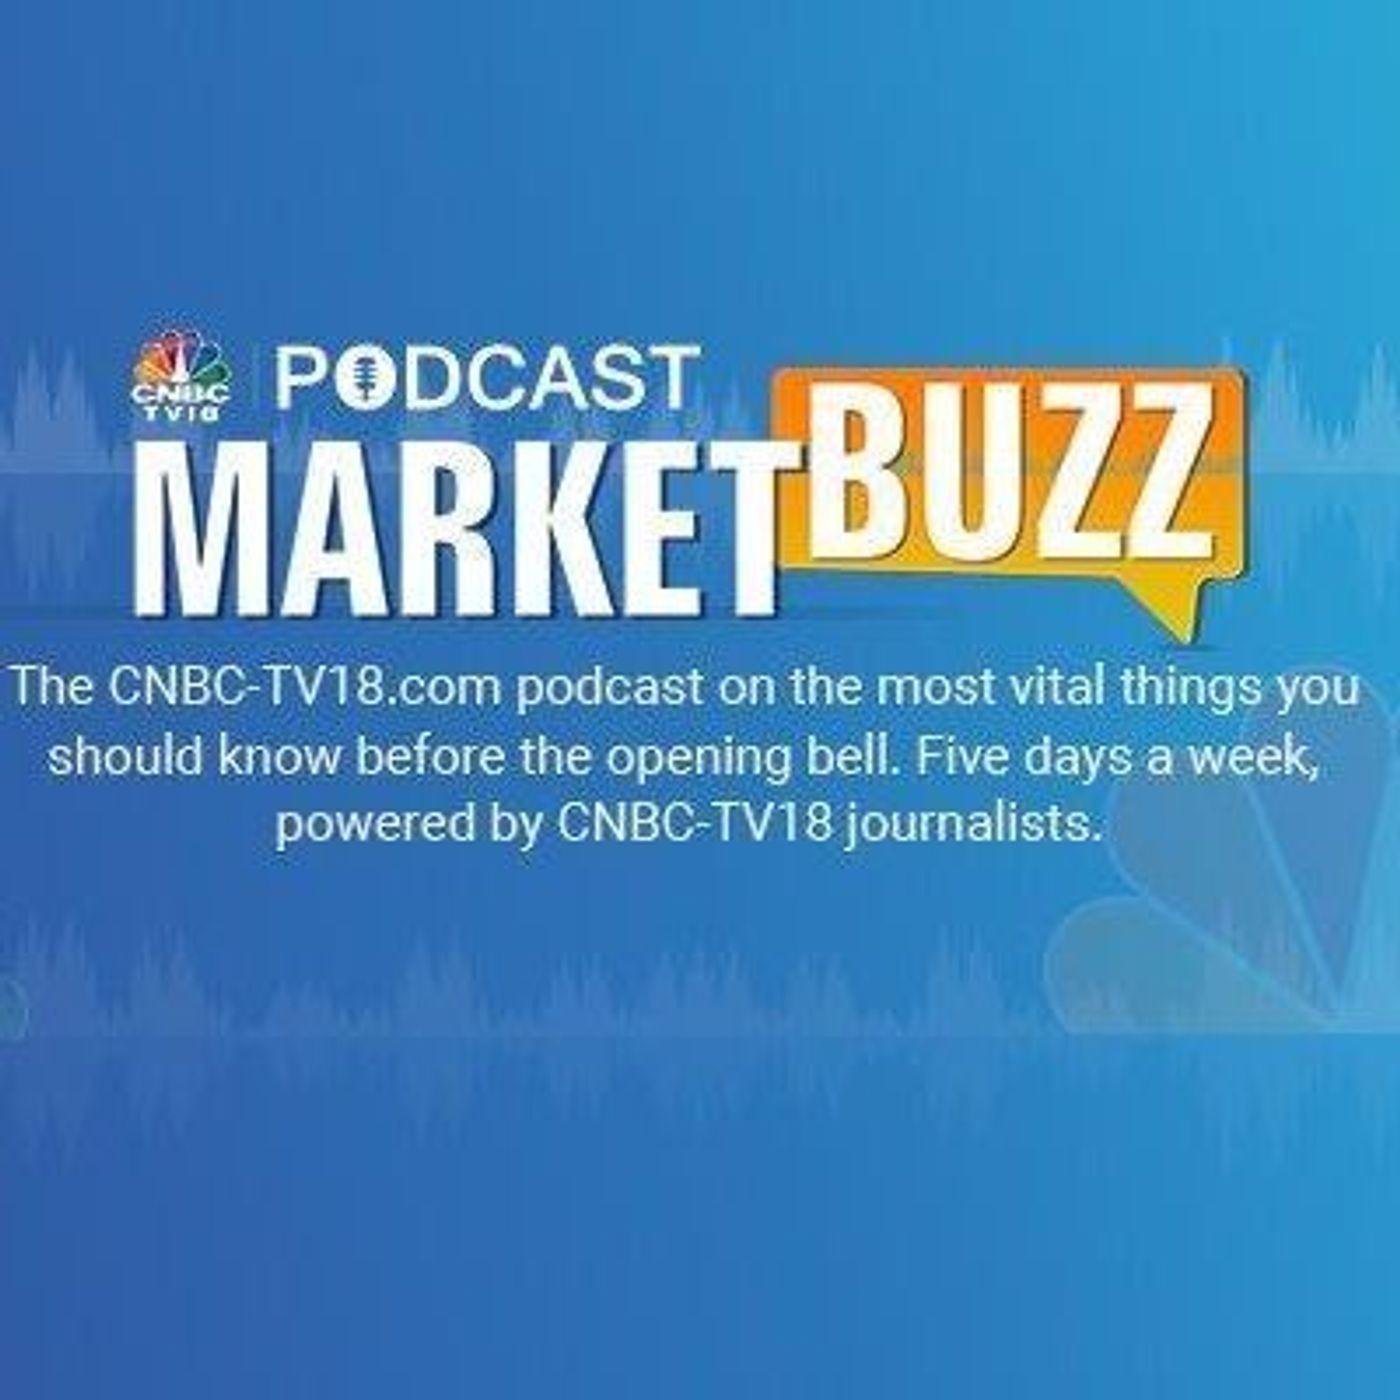 1240: Marketbuzz Podcast with Kanishka Sarkar: Sensex, Nifty 50 likely to open flat, Tech Mahindra, Bajaj Finance in focus